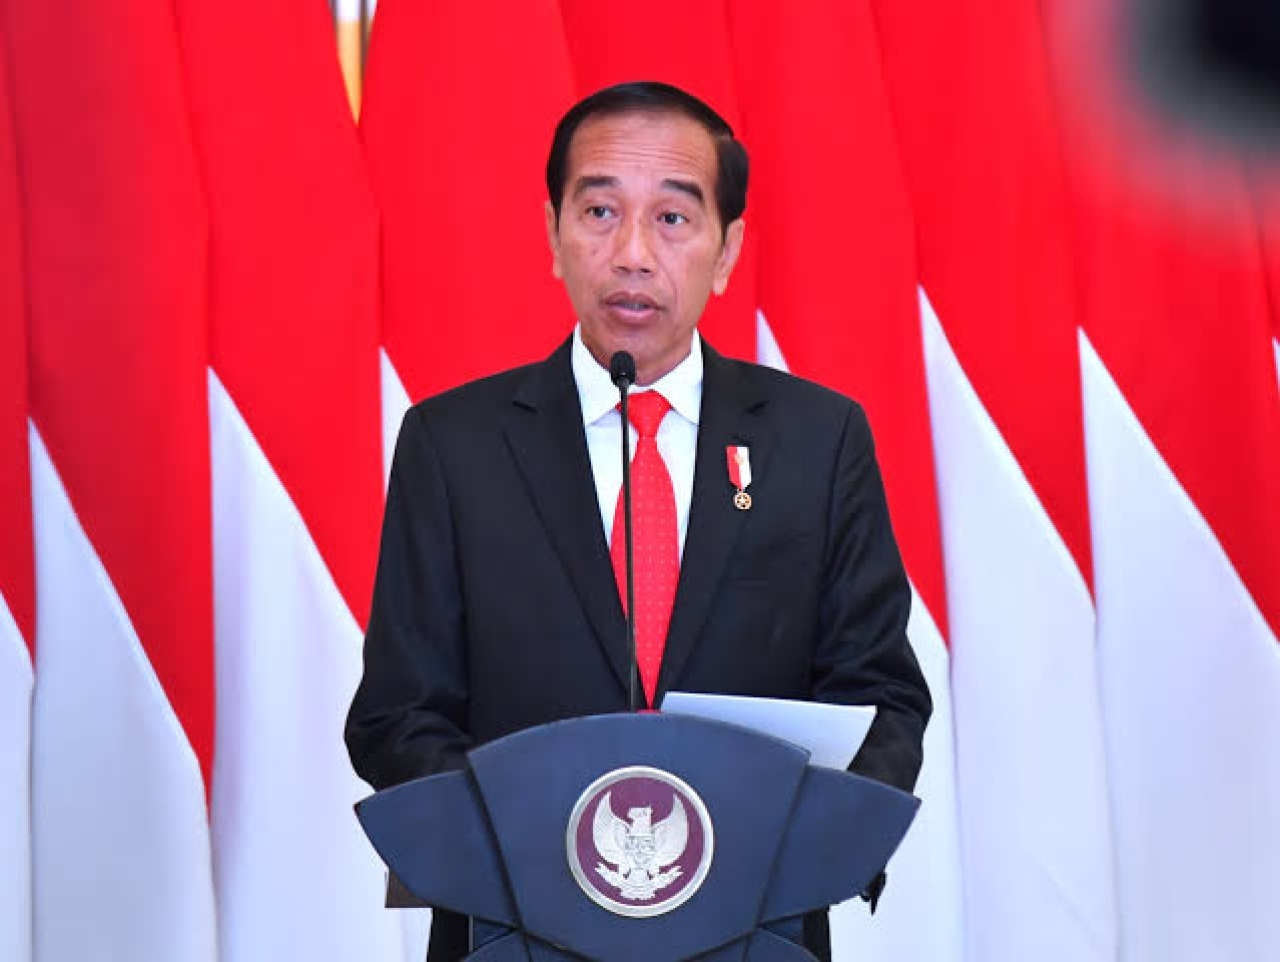 MK Panggil 4 Menteri Kabinet, Jokowi Pastikan Semua Datang dan Menjelaskan!